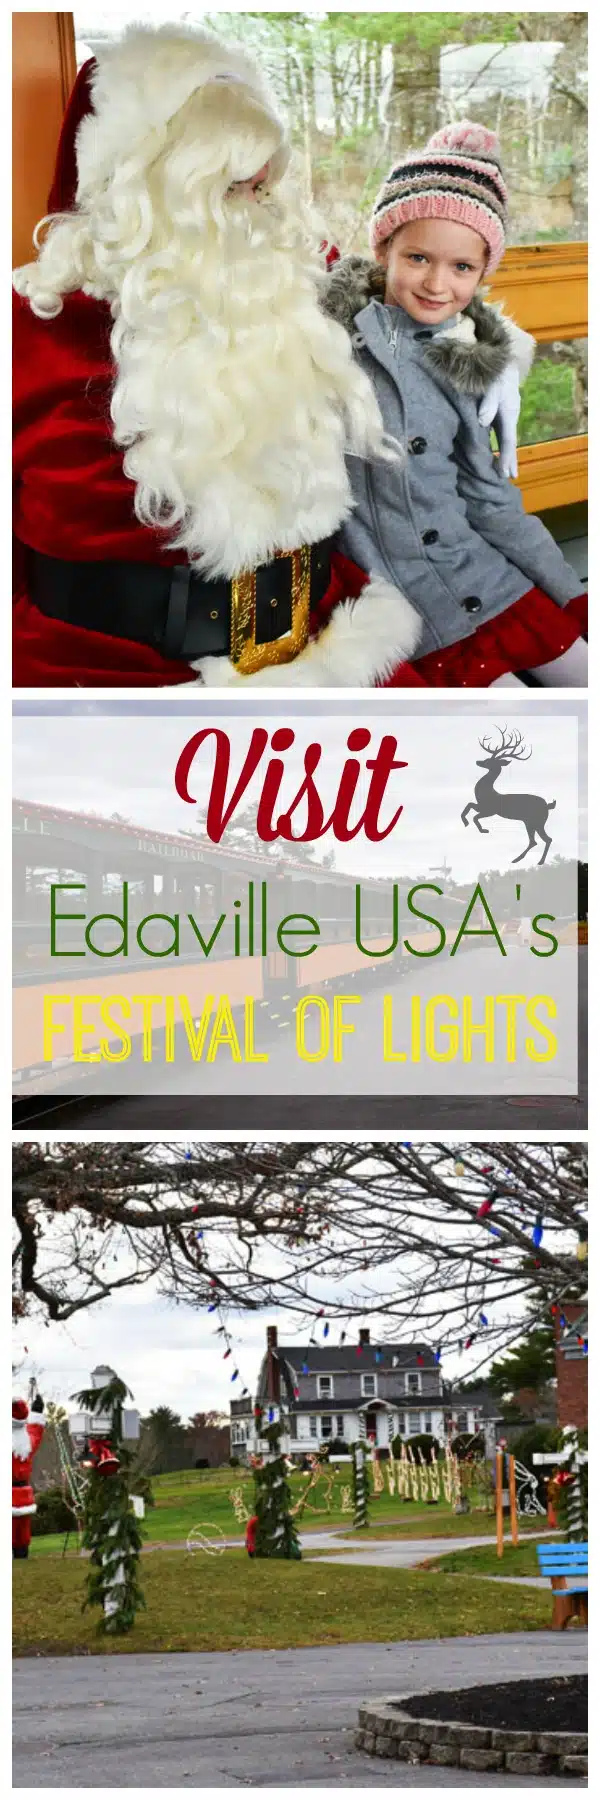 visit-edaville-usas-festival-of-lights